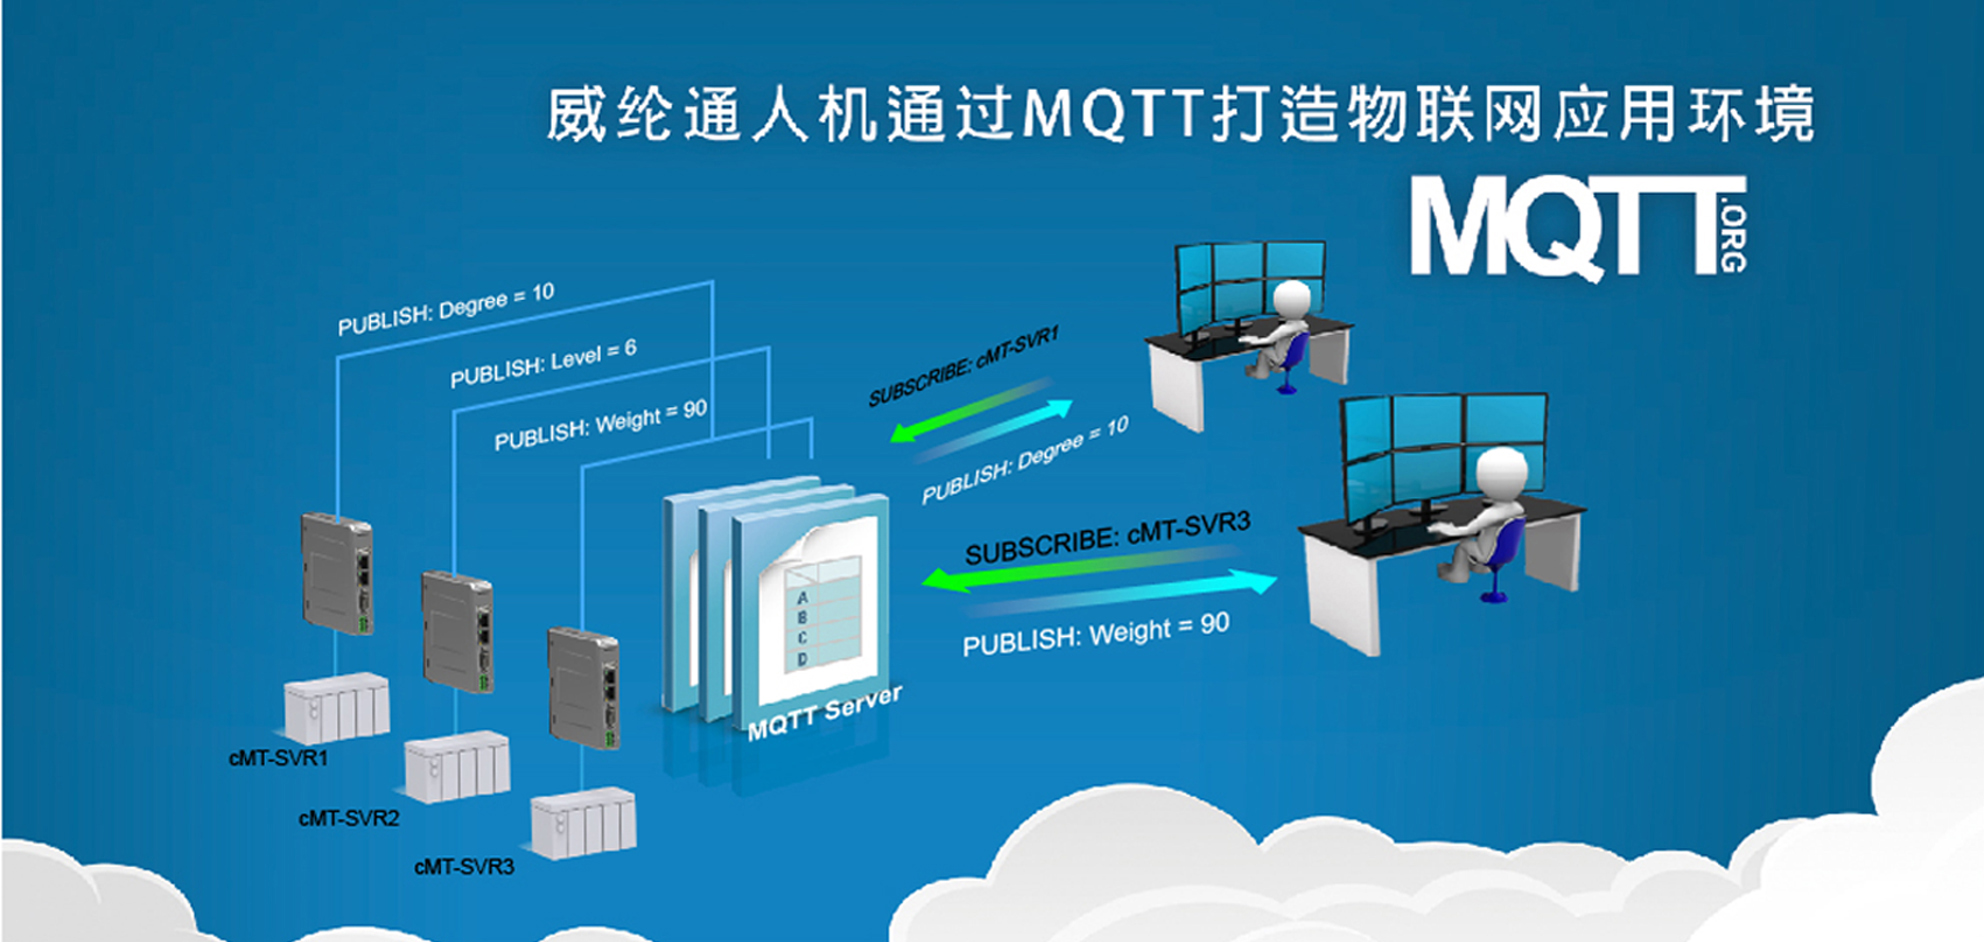 威纶通人机通过MQTT打造物联网应用环境